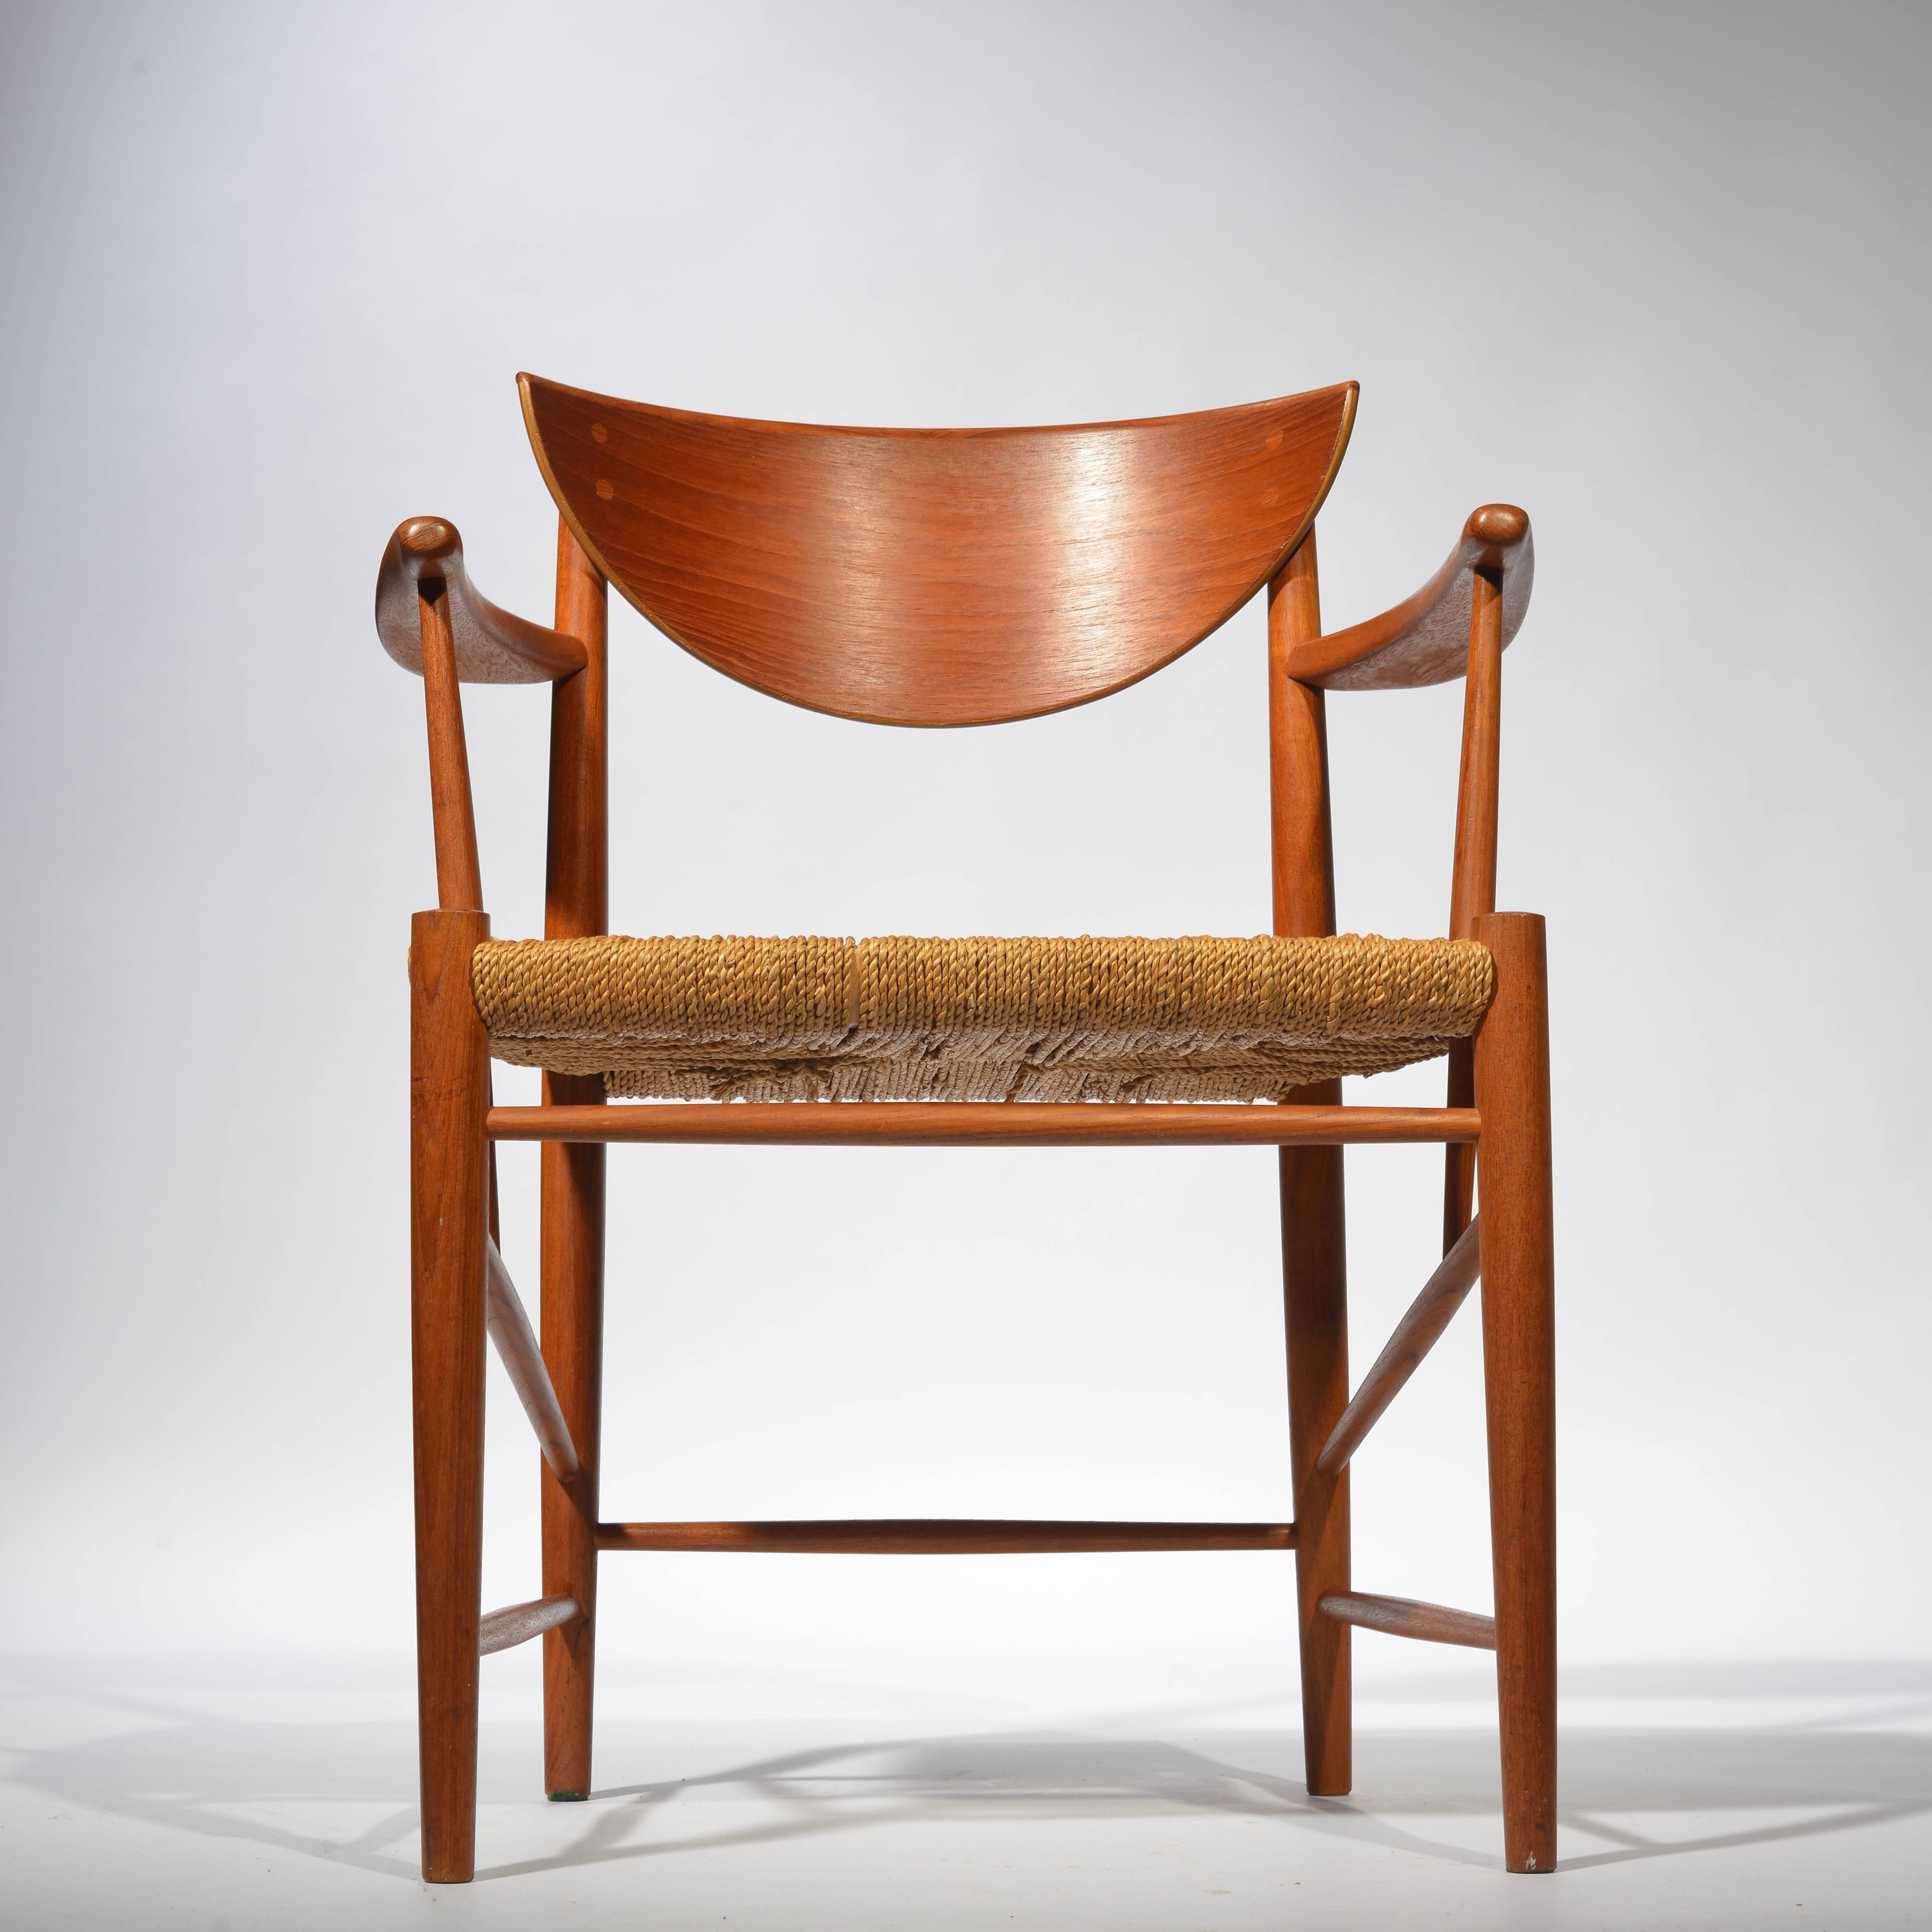 Mid-Century Modern Danish armchair in teak, model 317, by Peter Hvidt & Orla Mølgaard Nielsen. Original cord seat.